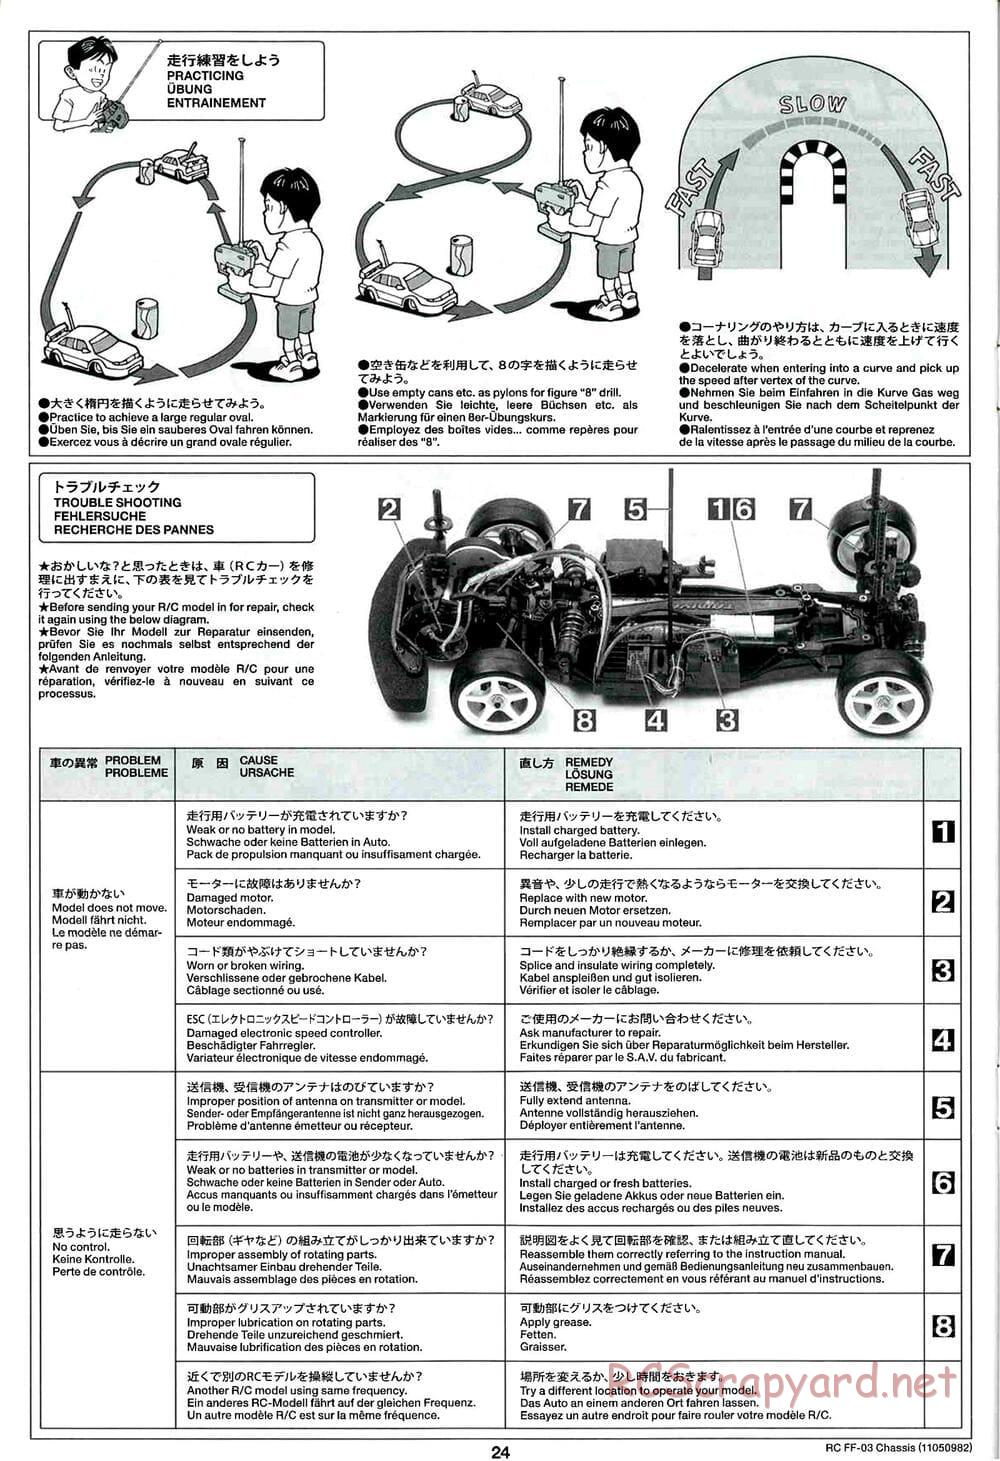 Tamiya - Honda Accord Aero Custom - FF-03 Chassis - Manual - Page 24